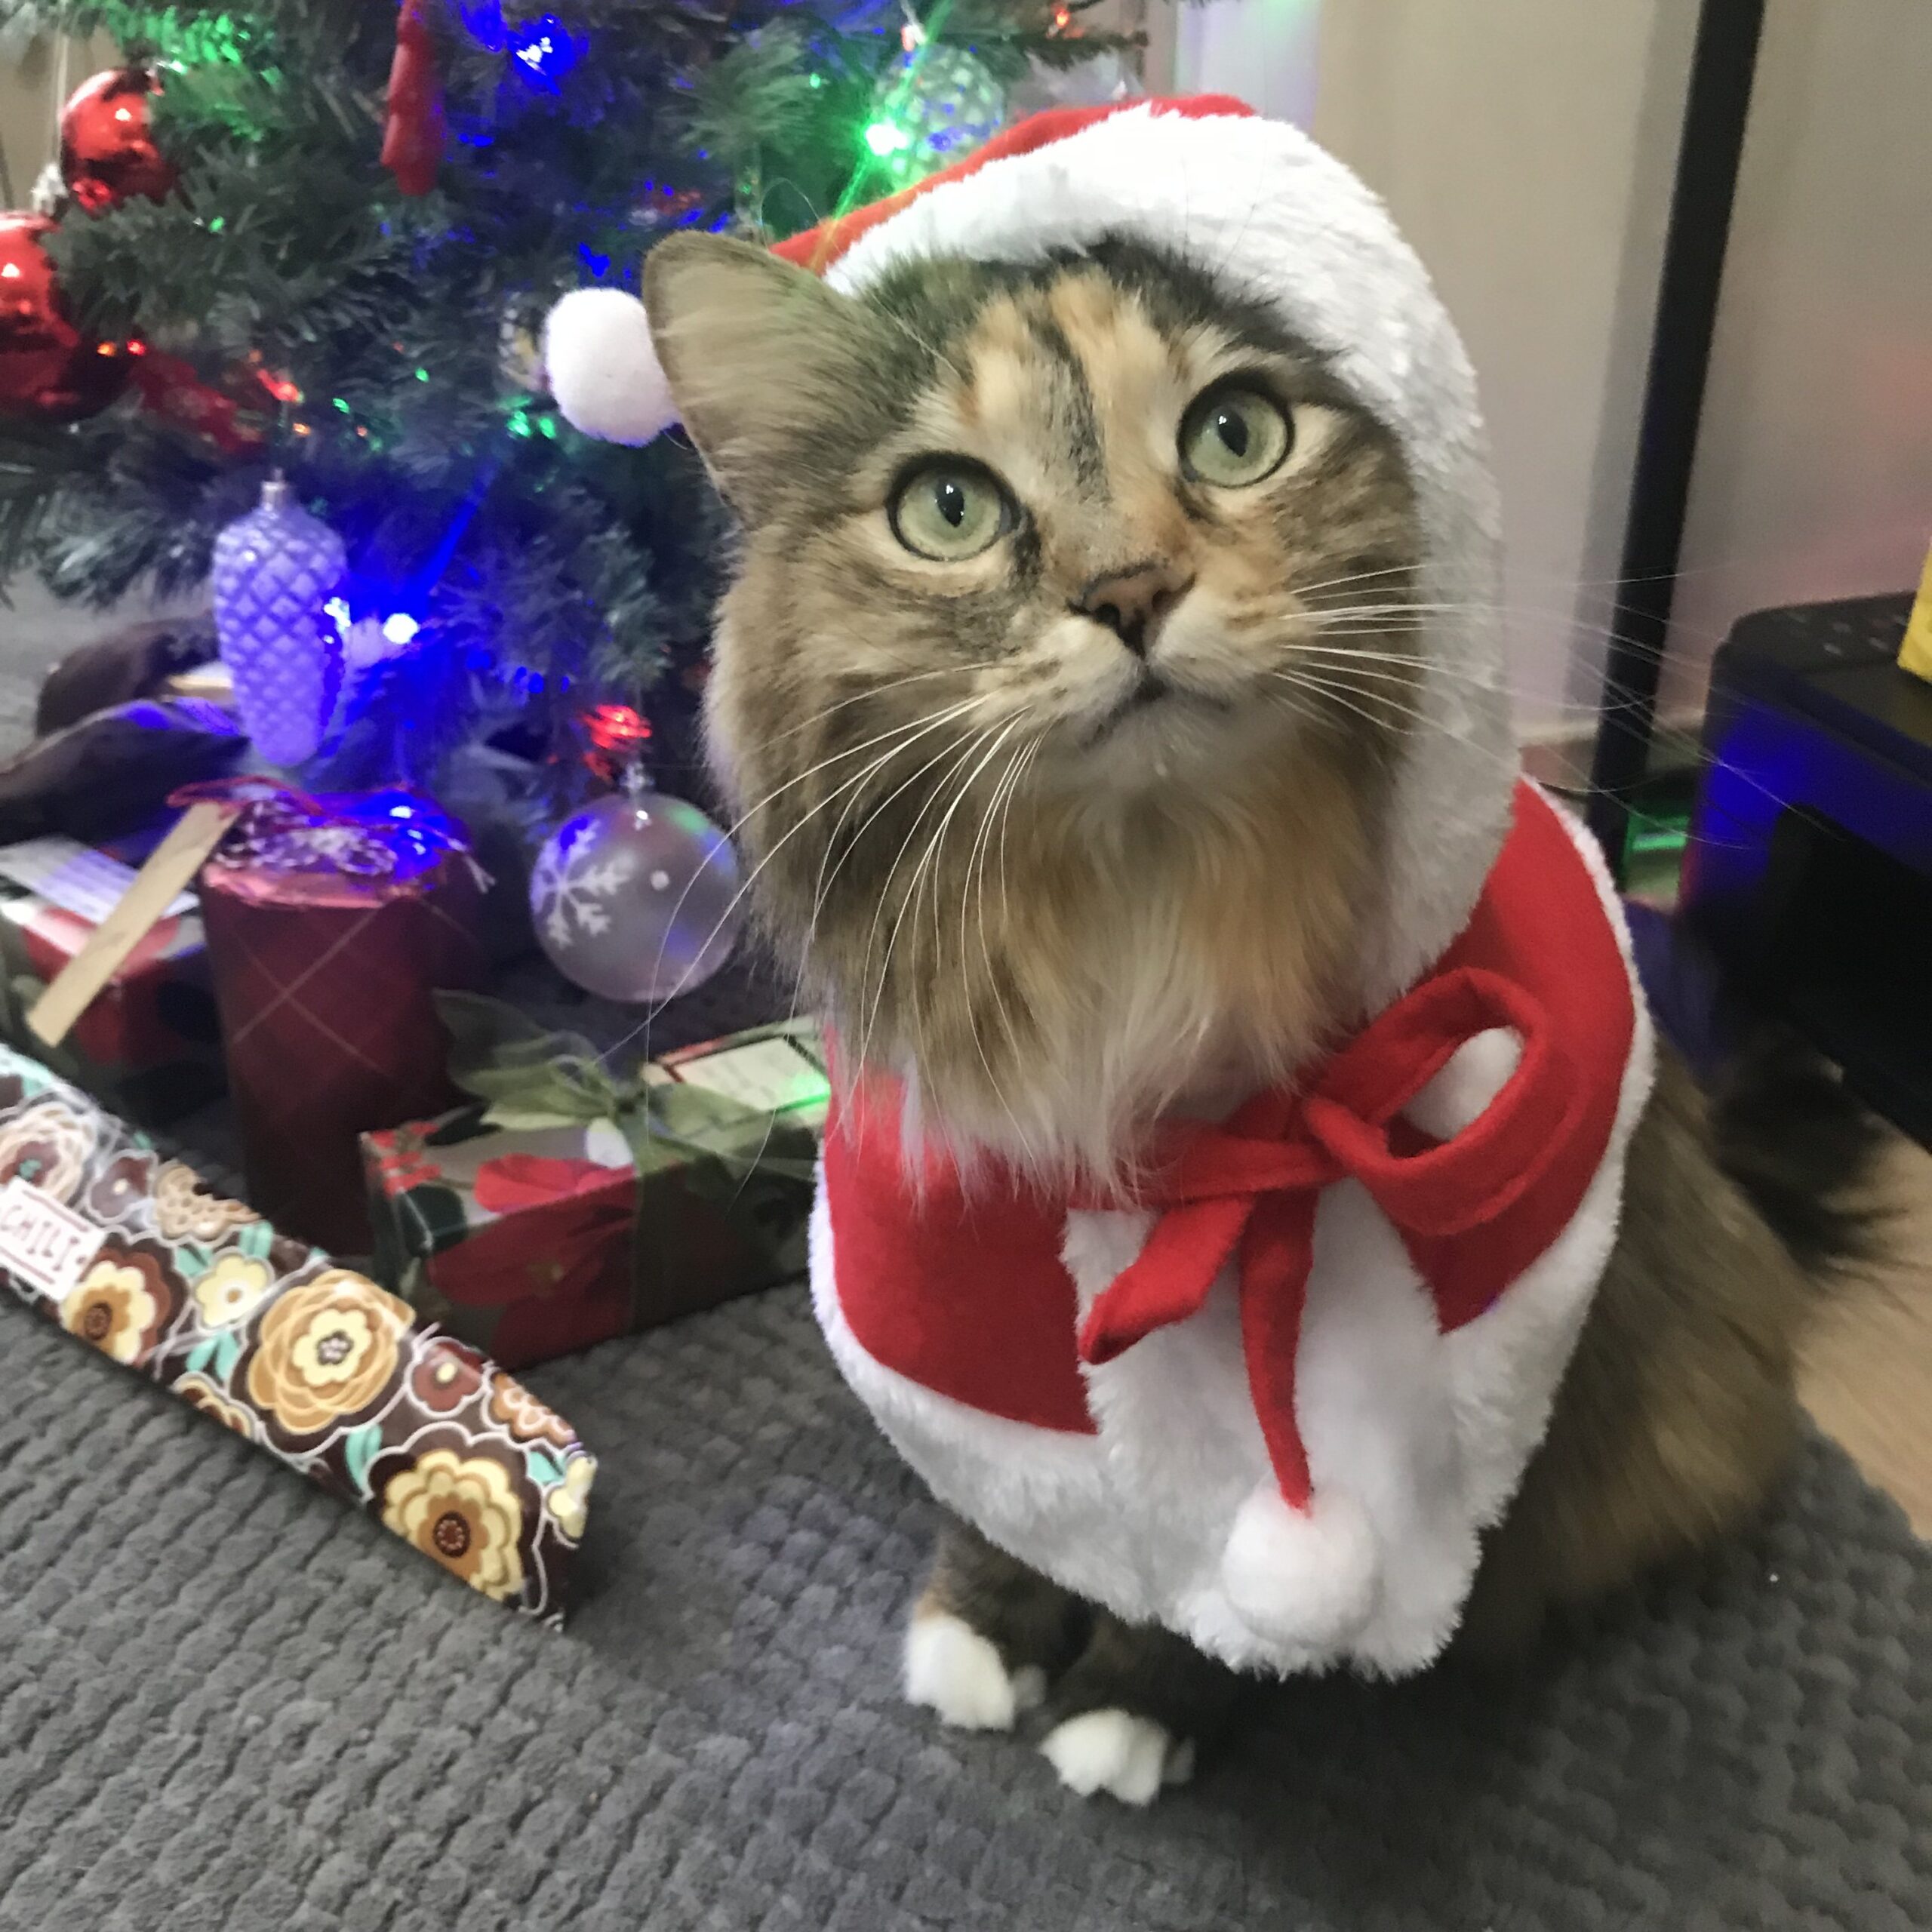 Cat dressed as Santa